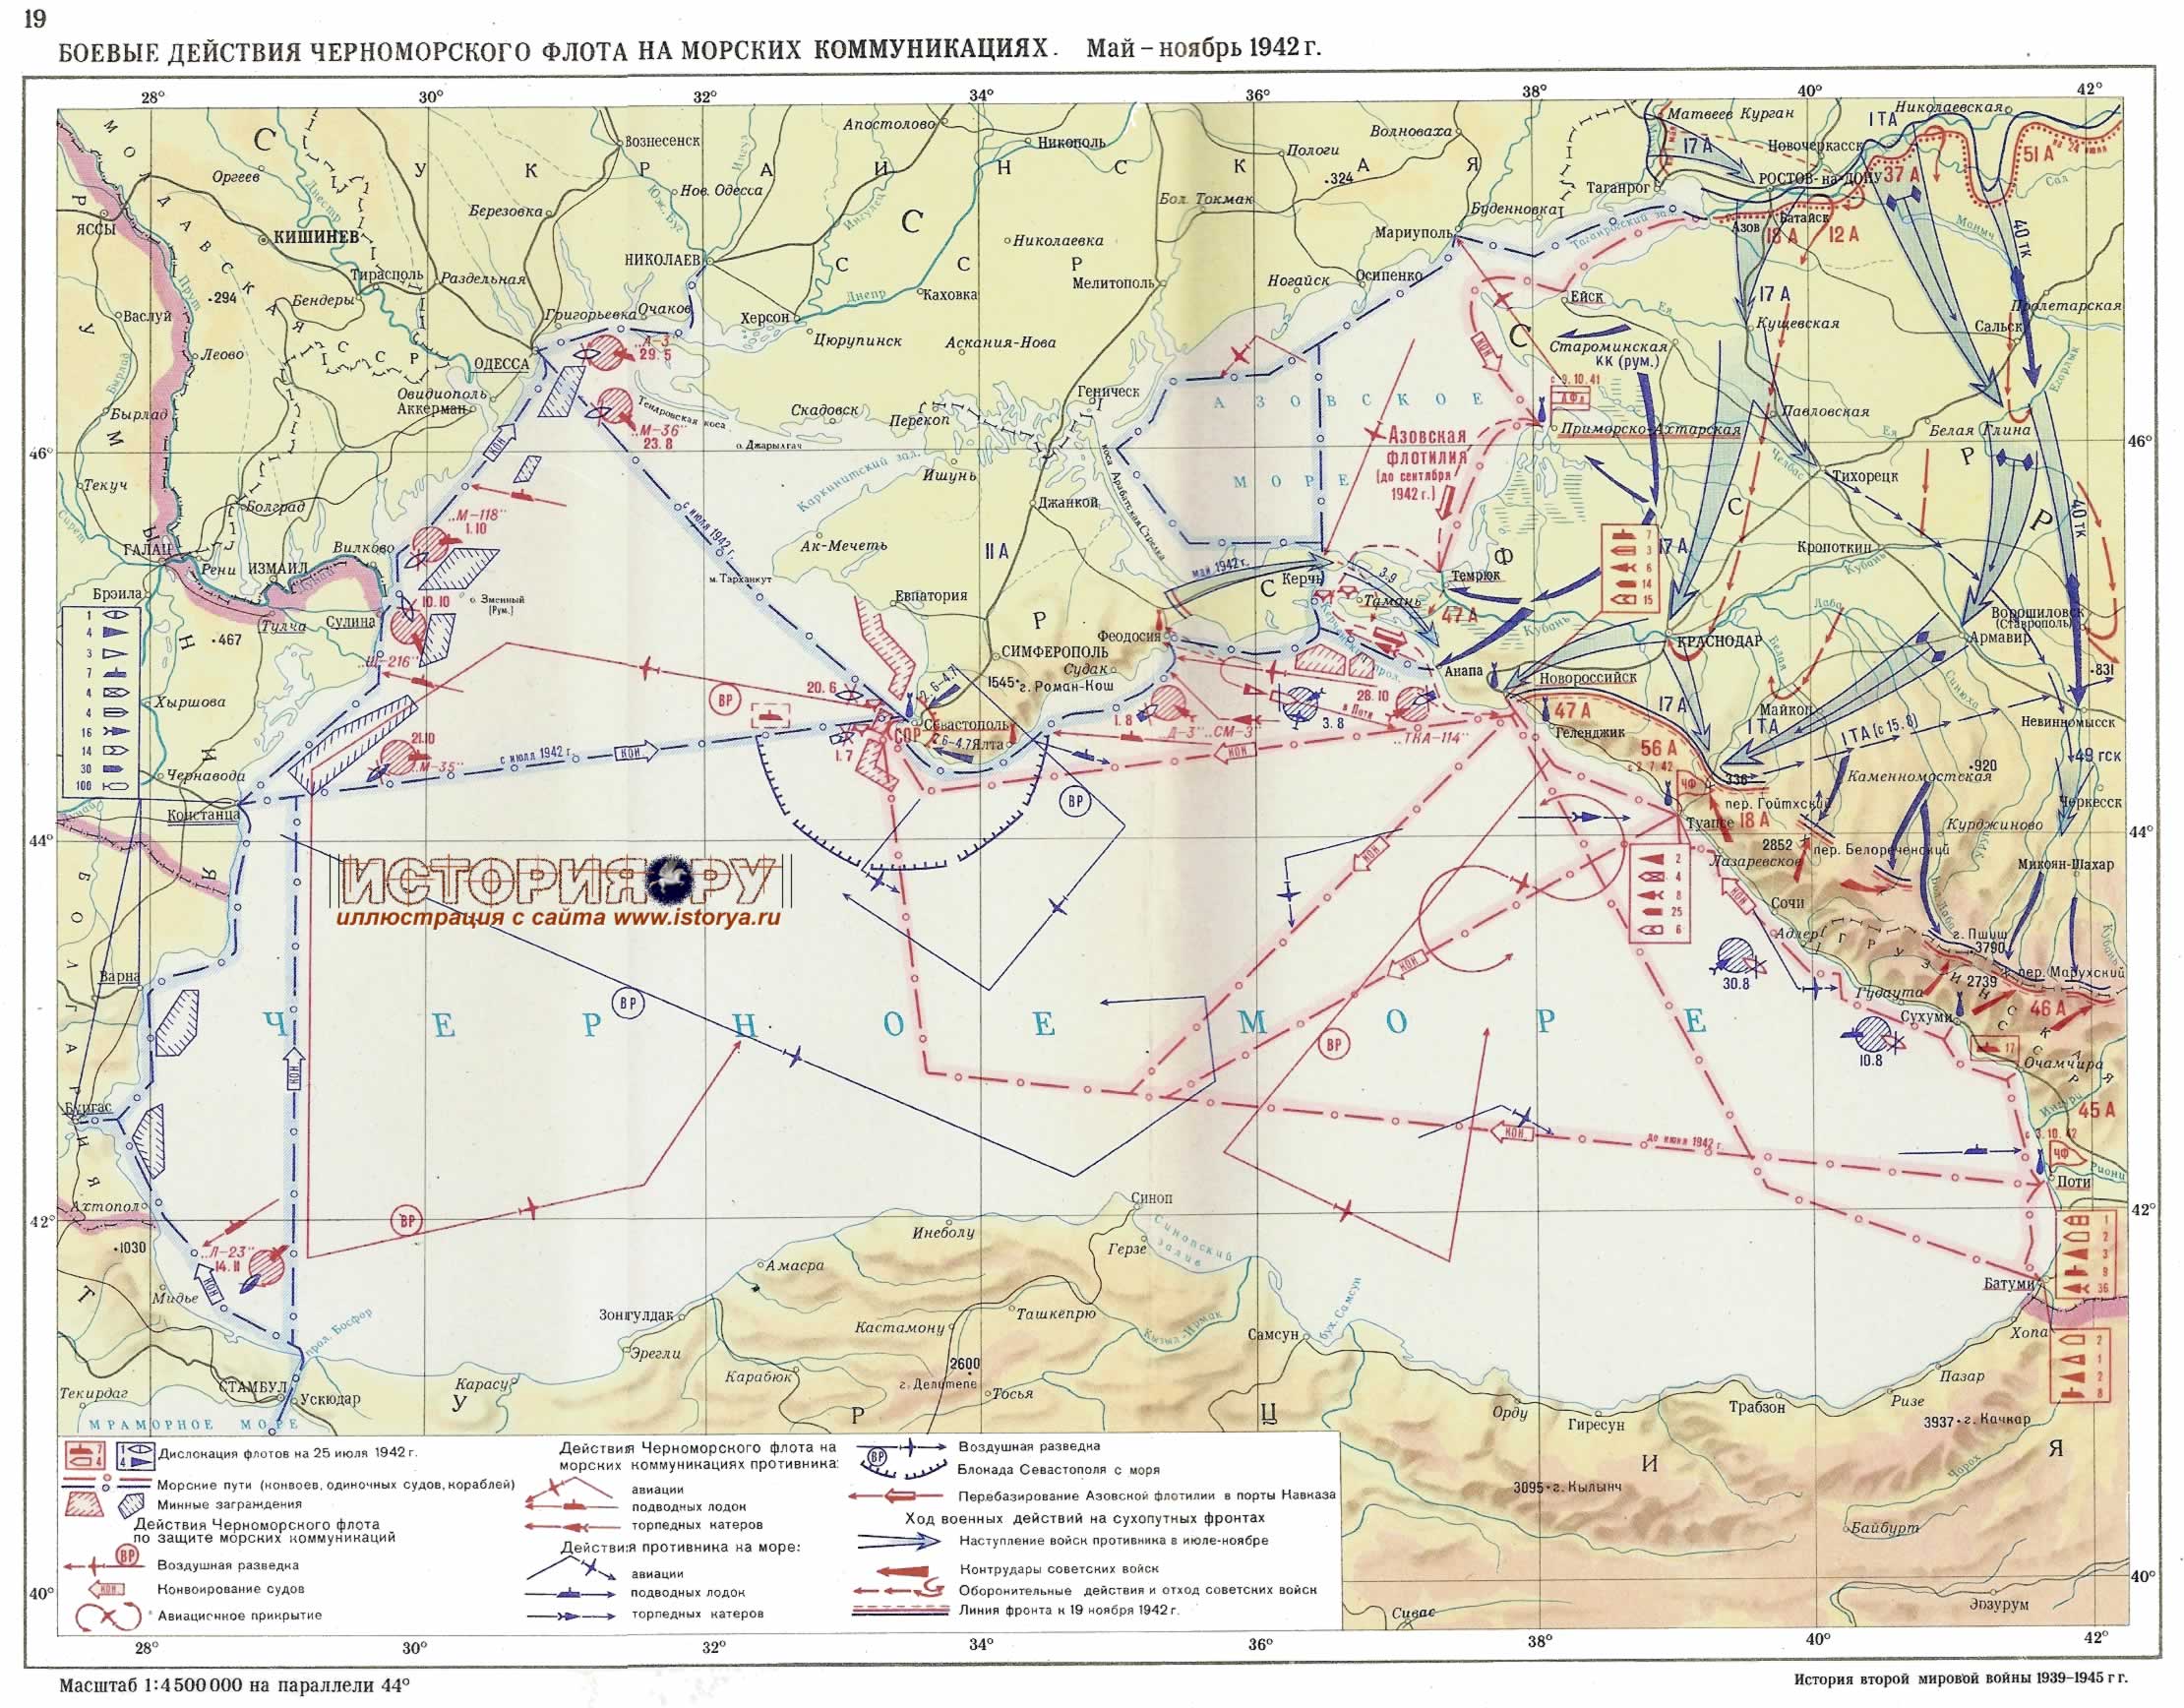 Боевые действия Черноморского Флота на морских коммуникациях. Май-ноябрь 1942г. 